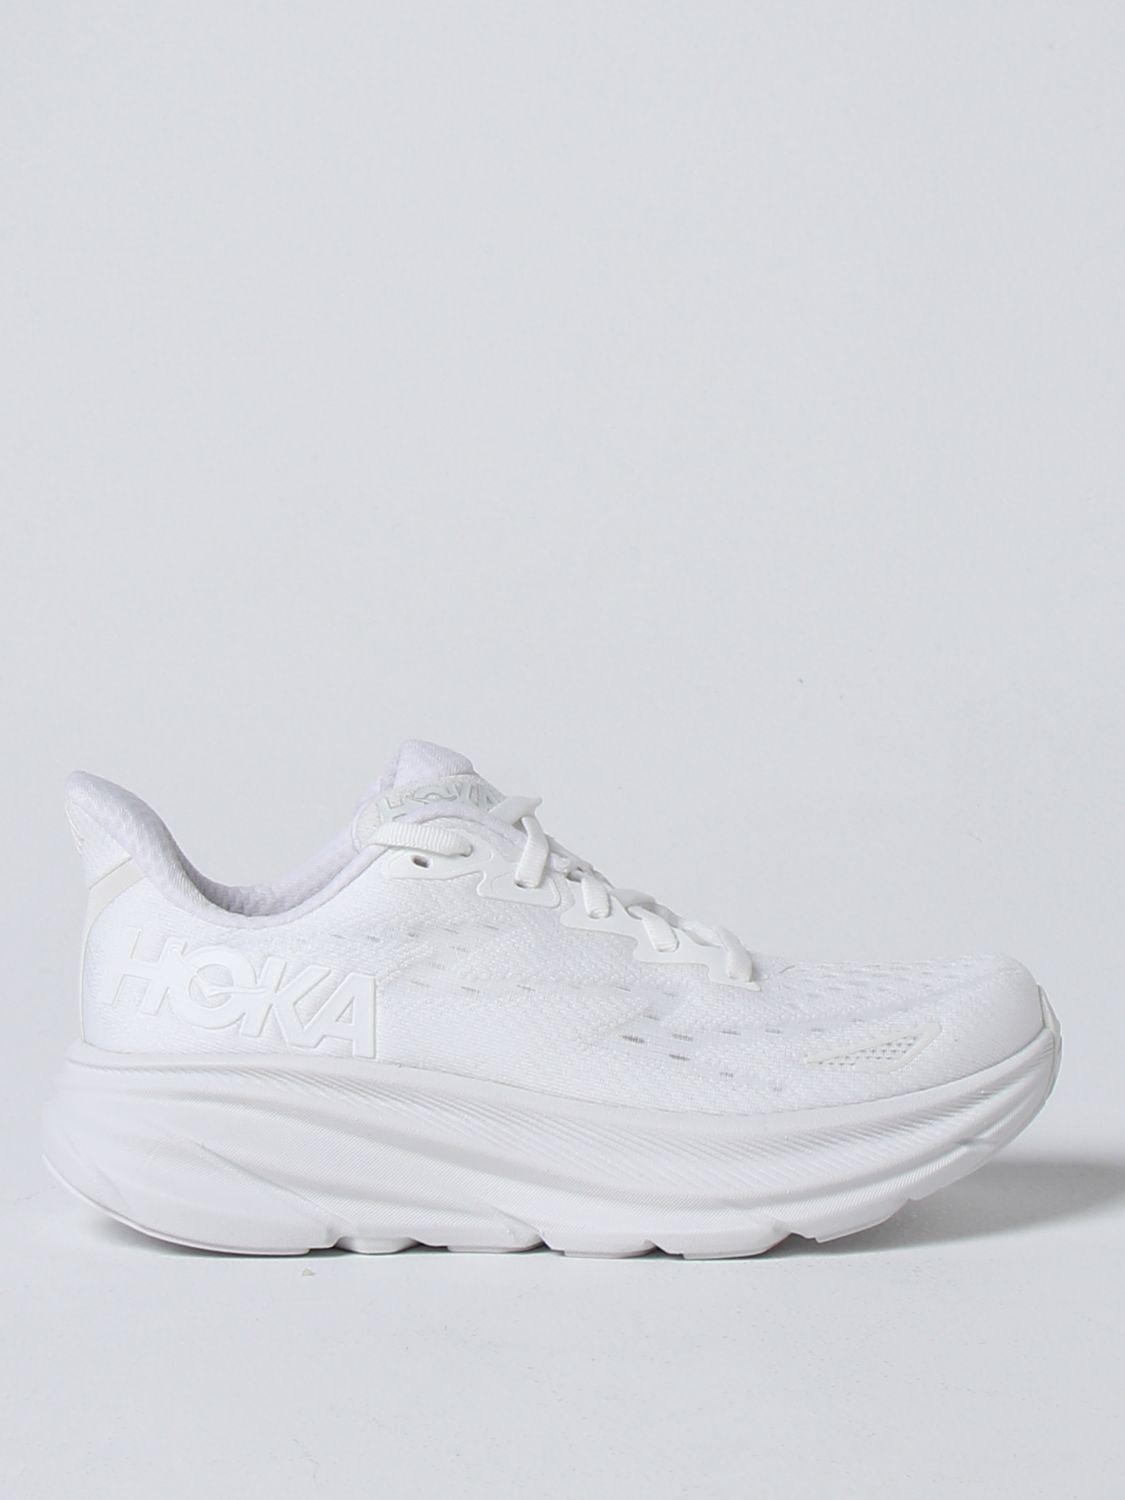 Hoka One One Sneakers in White | Lyst